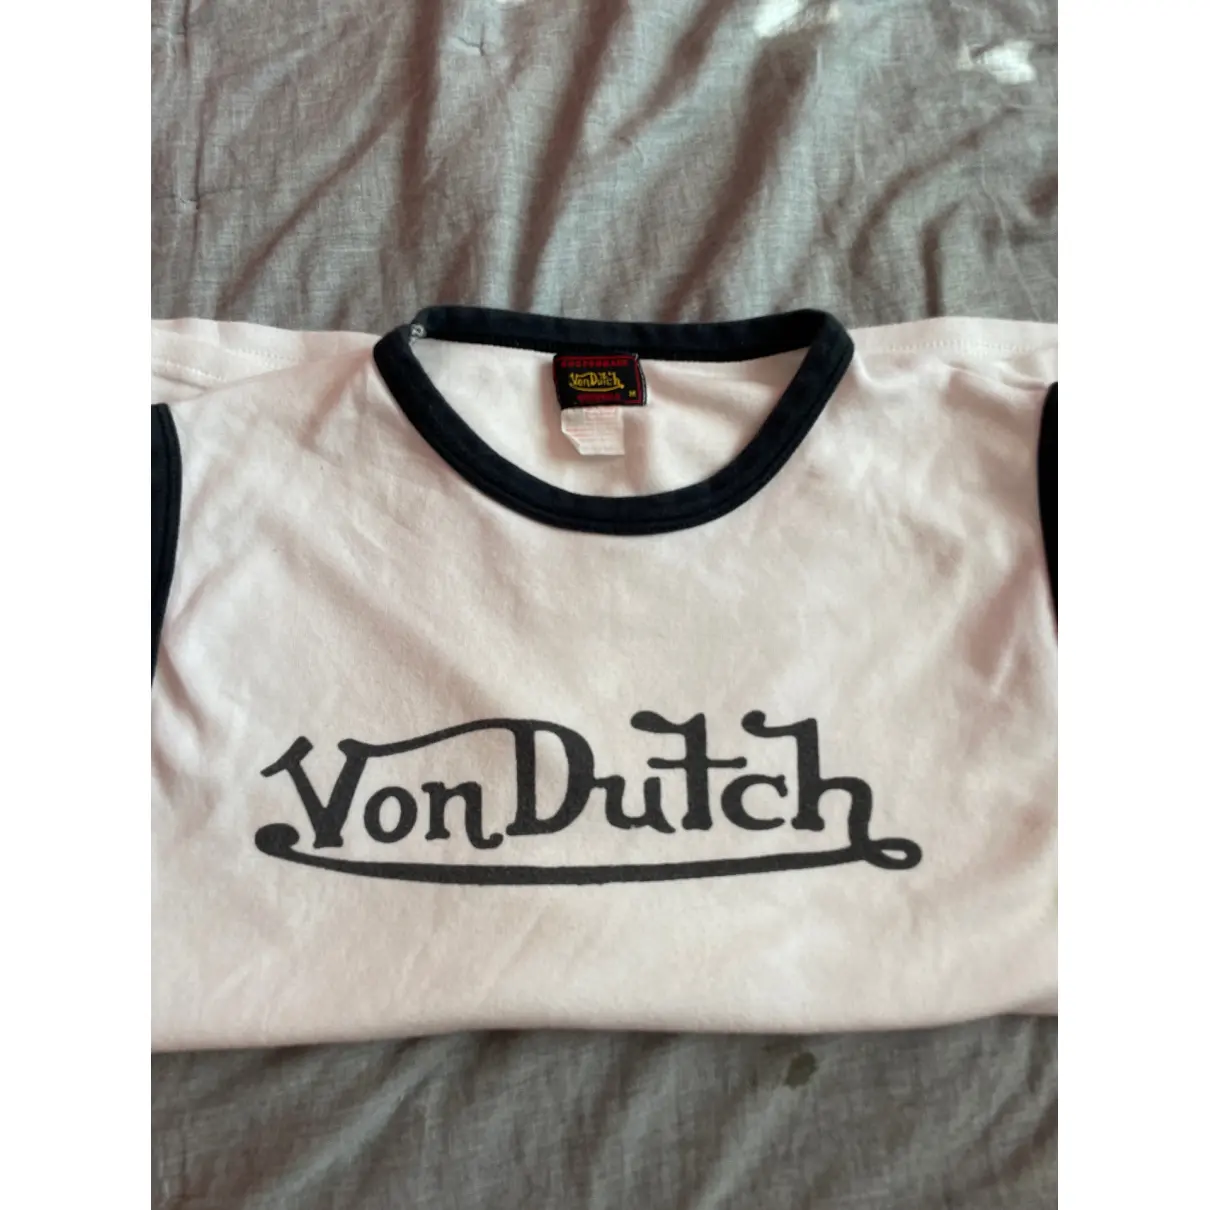 Buy VON DUTCH Vest online - Vintage